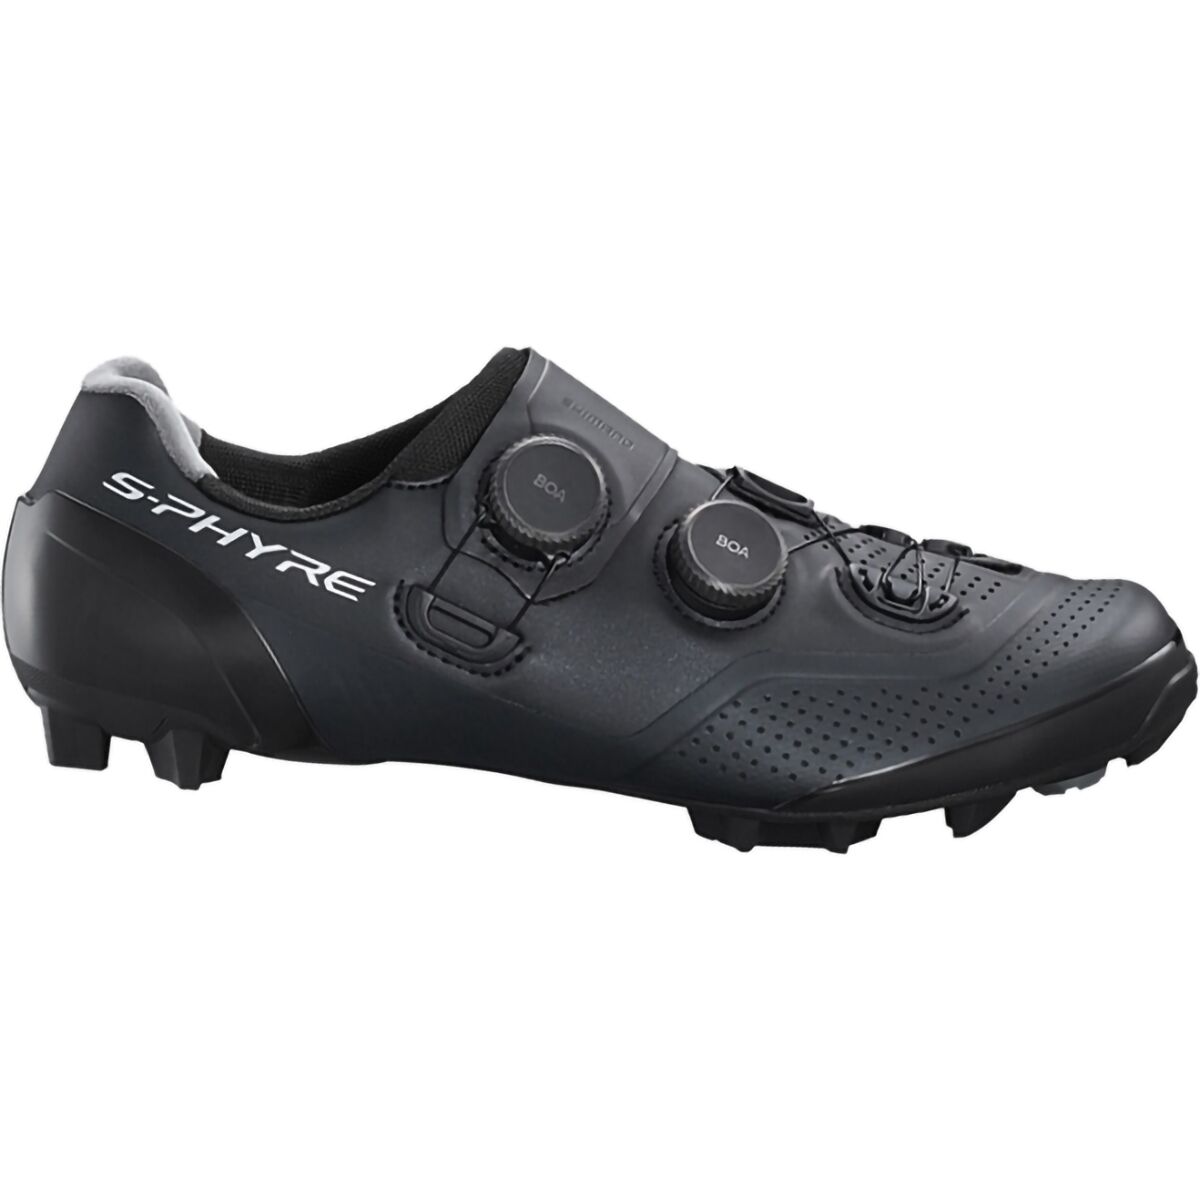 Shimano XC902 S-PHYRE Wide Cycling Shoe - Men's